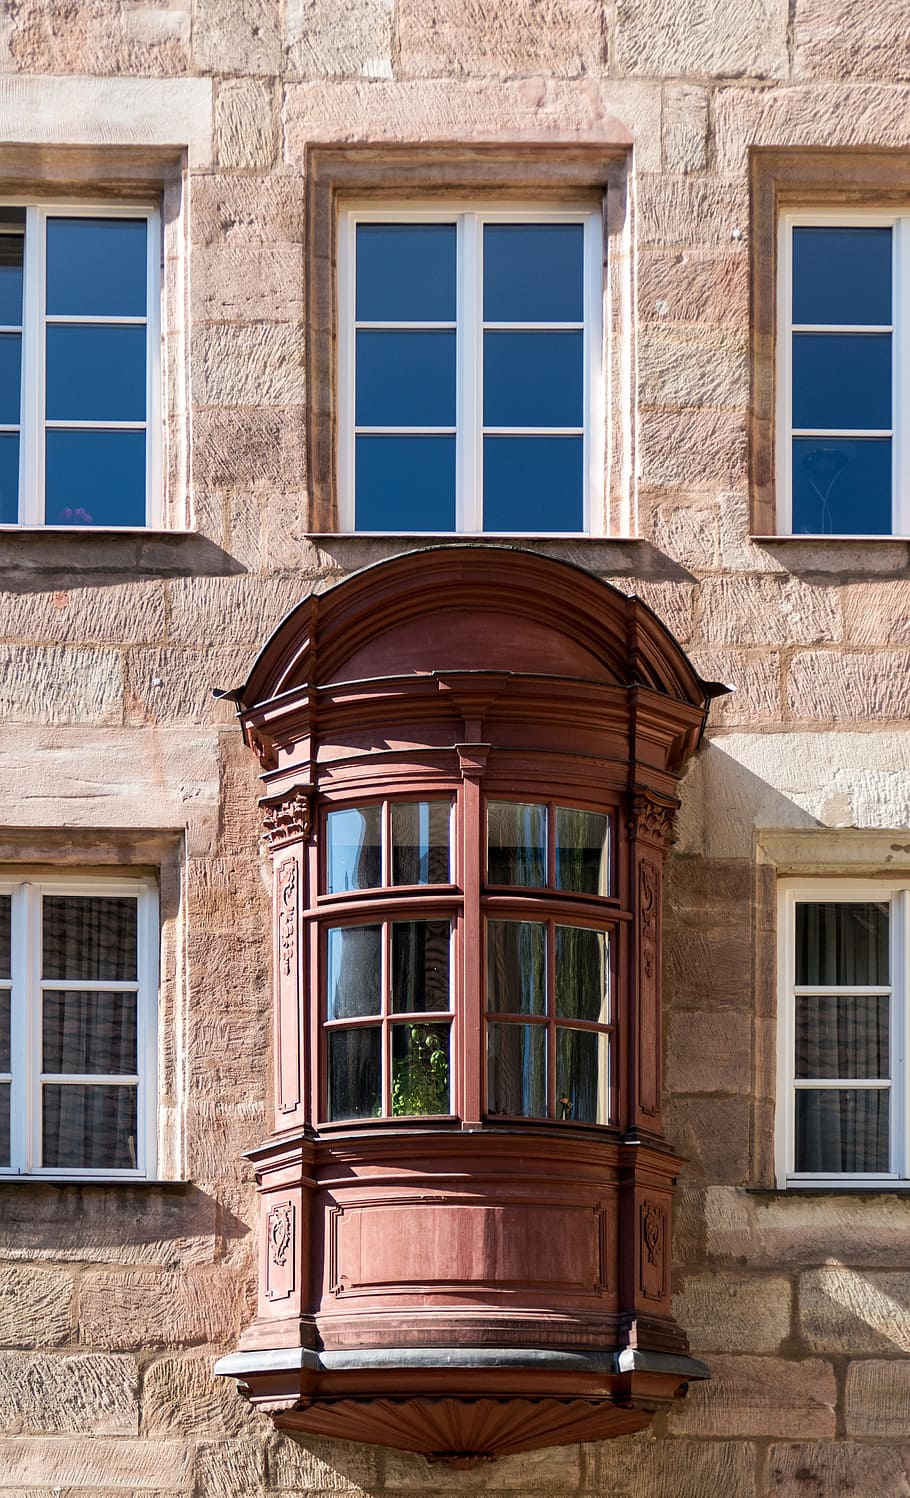 Arquitetura, janela de sacada, chörlein, cidade velha, construção, historicamente, fachada, casa, velho, parte da casa